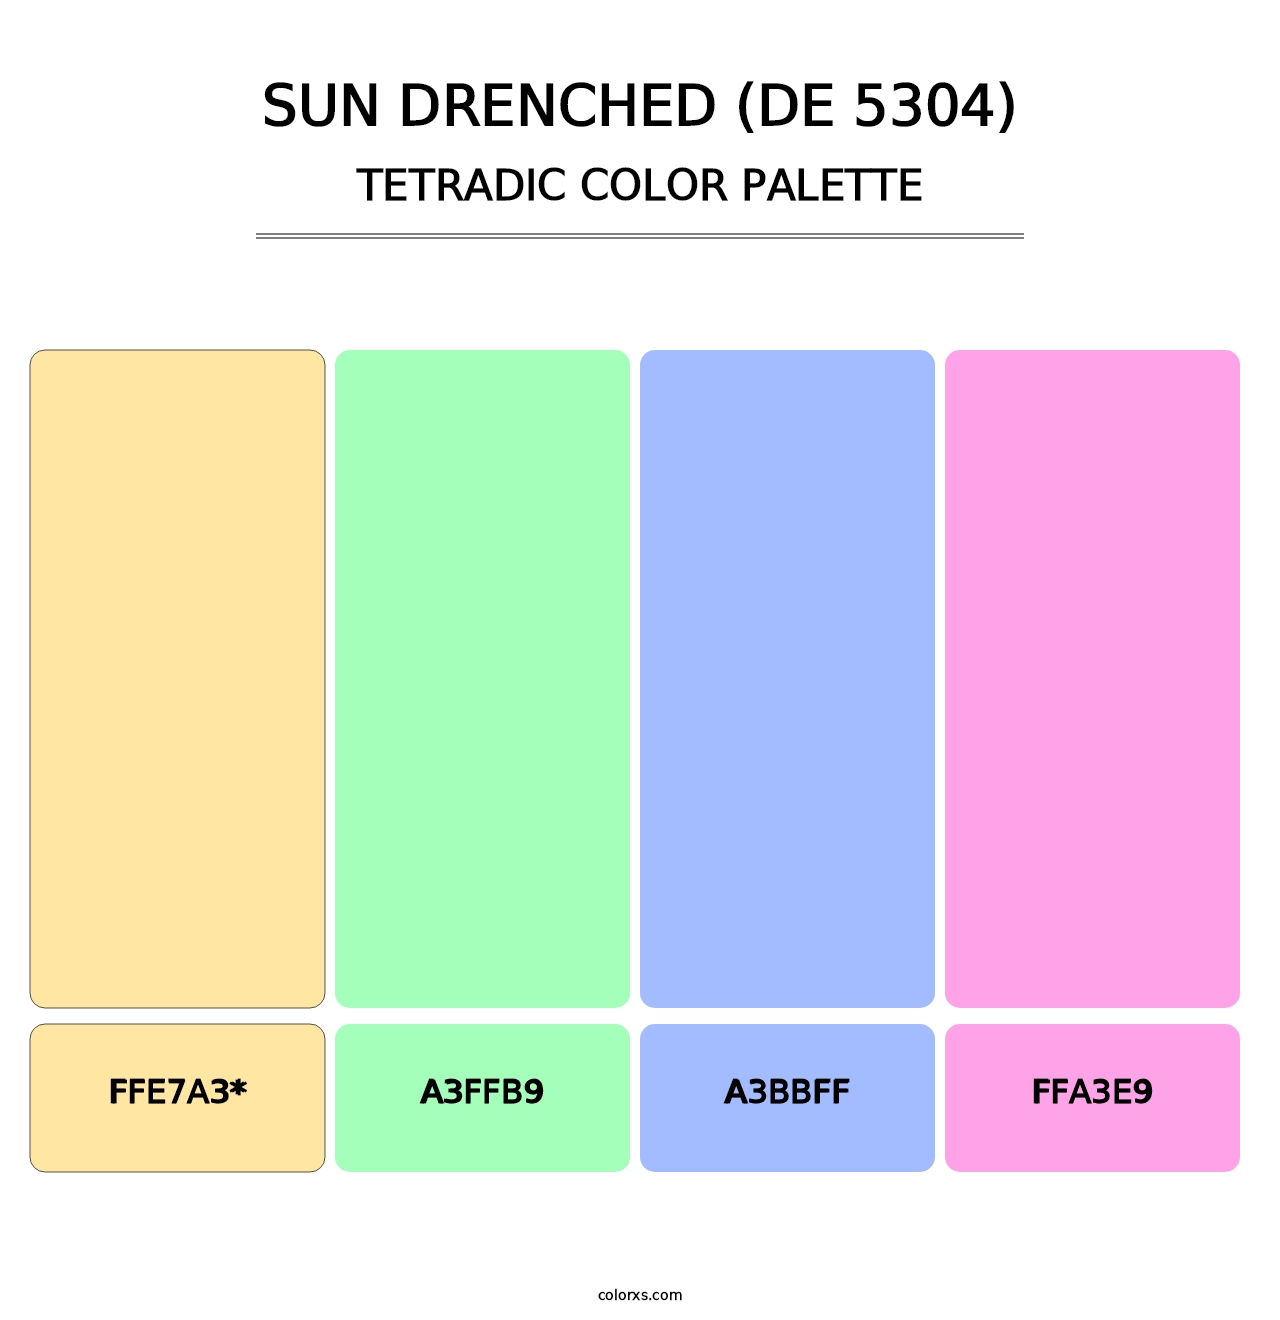 Sun Drenched (DE 5304) - Tetradic Color Palette